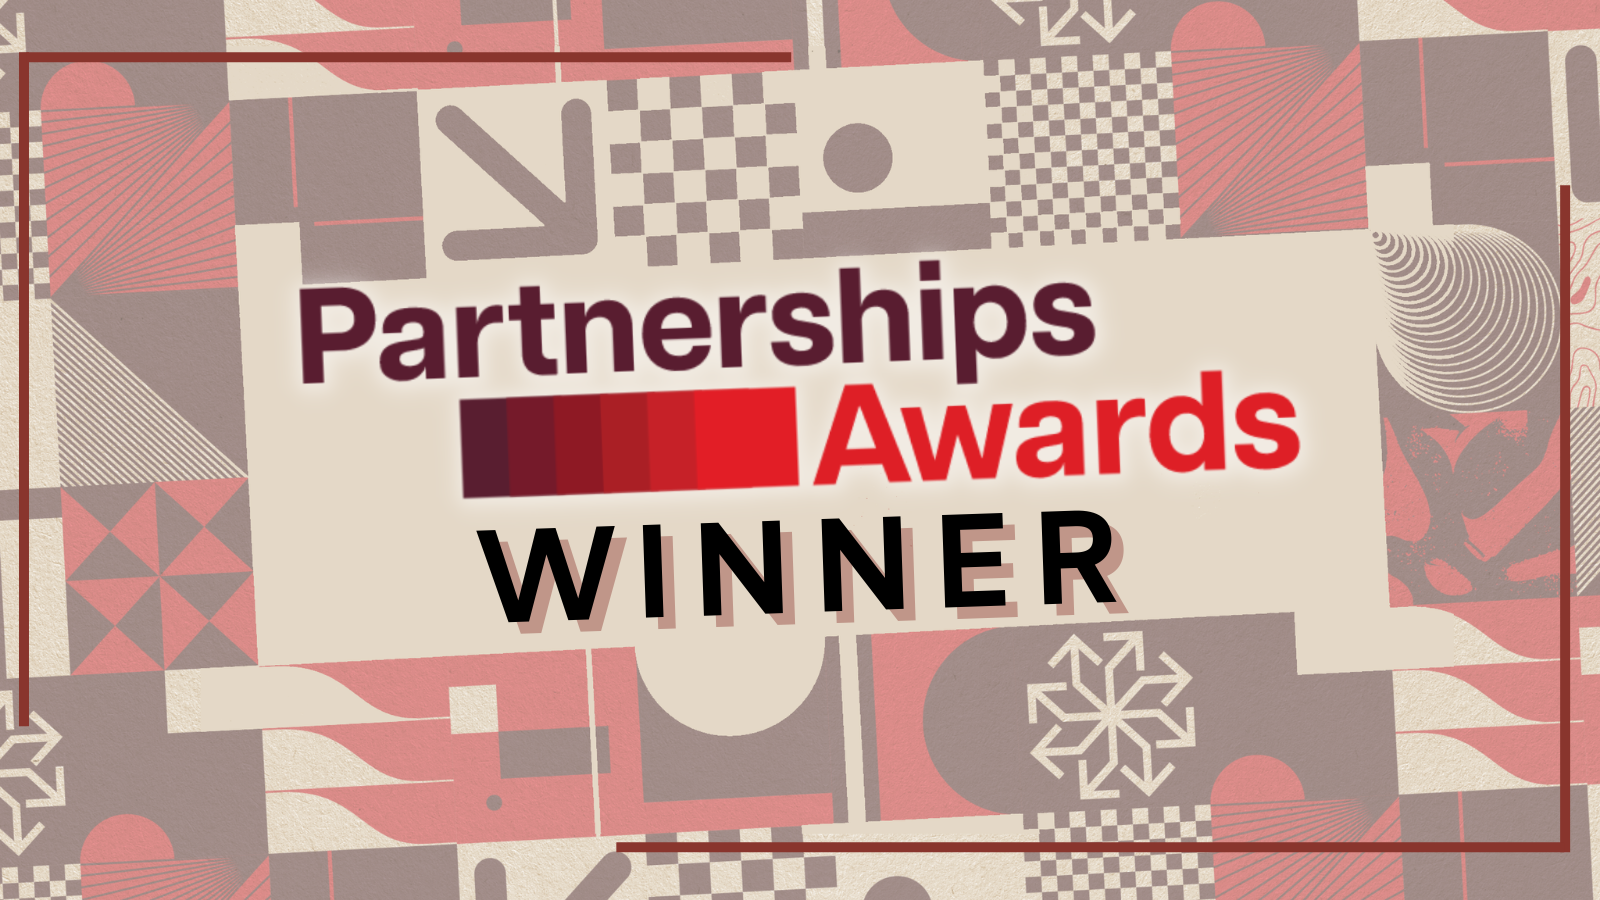 Partnerships Awards - Winner